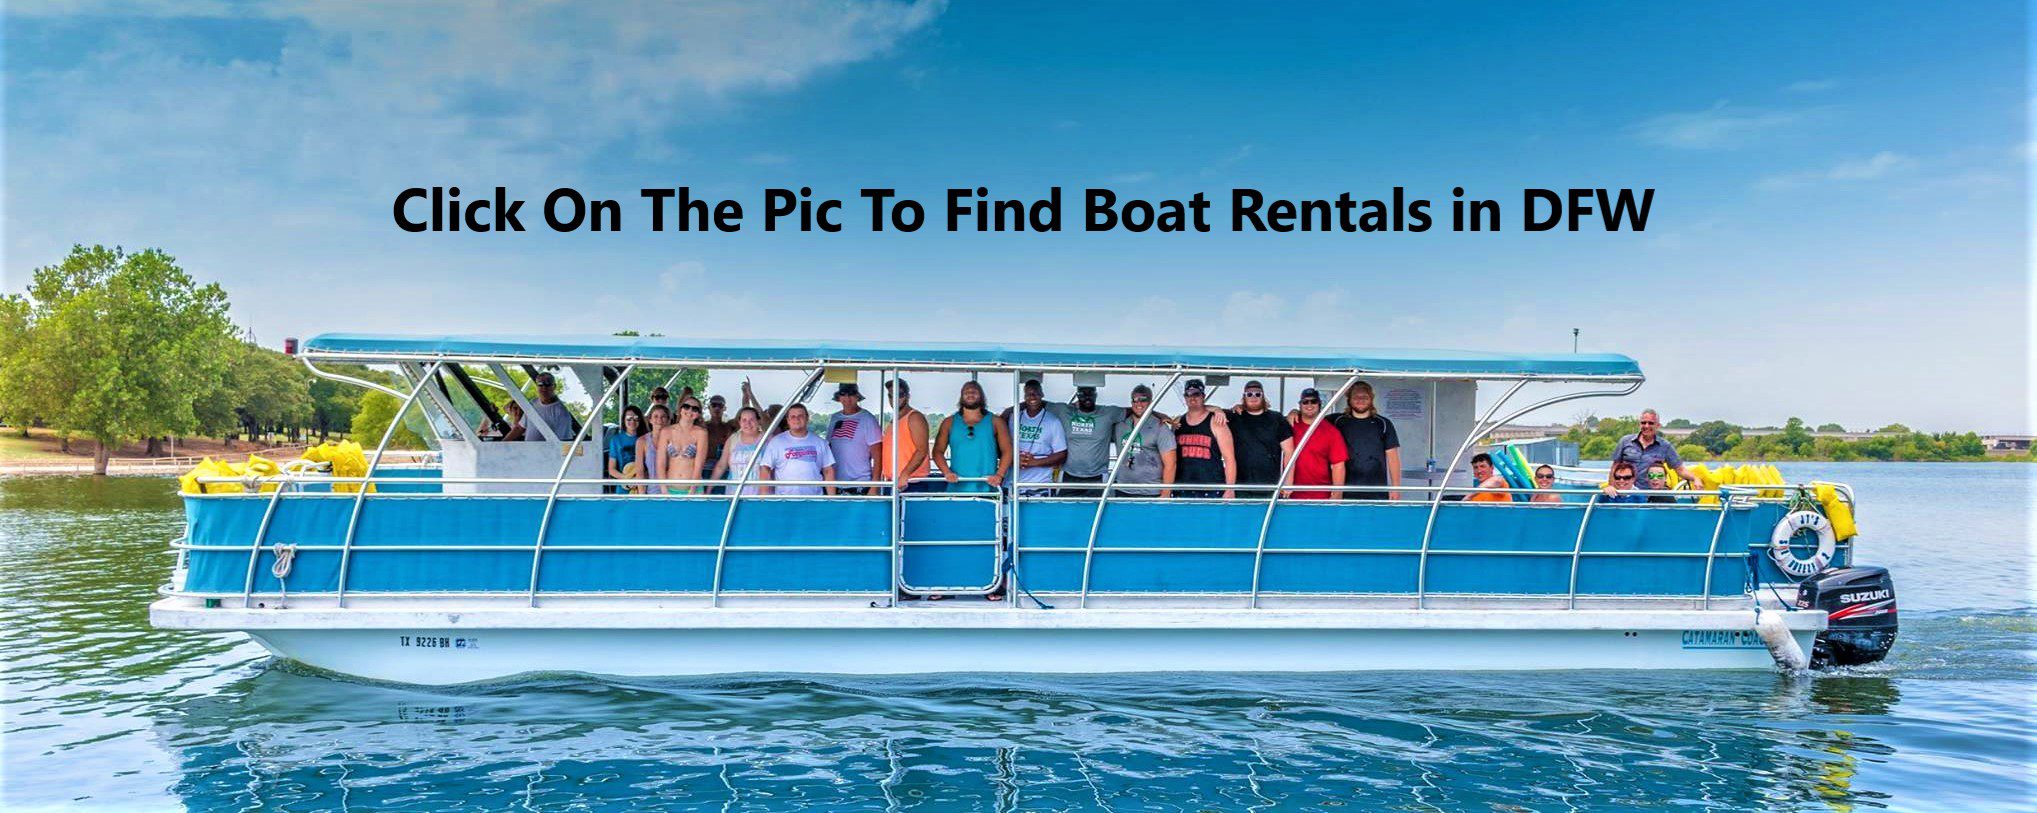 DFW Boat Rentals